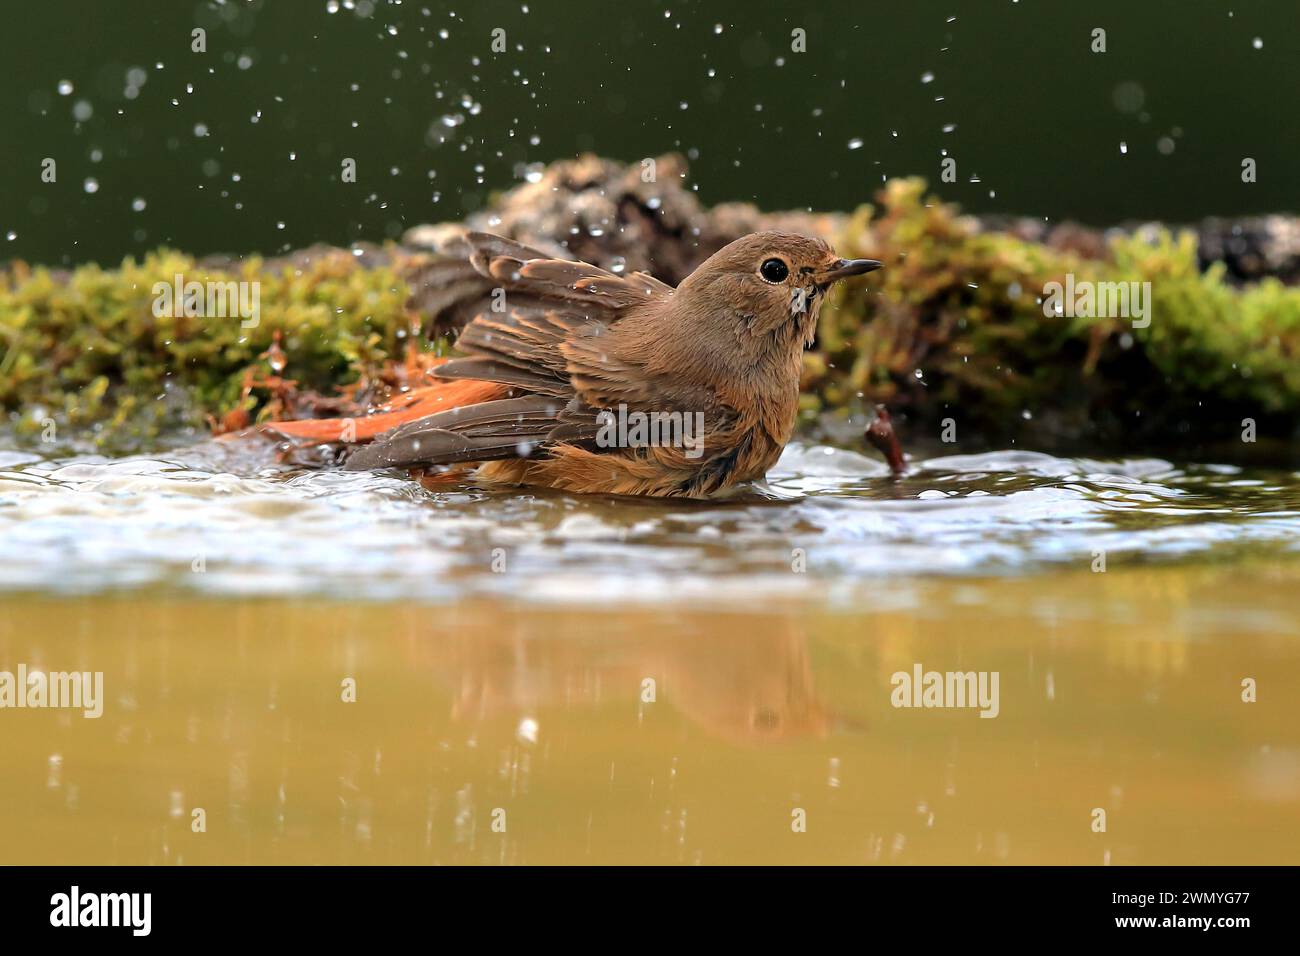 Ein robin genießt ein erfrischendes Bad in einem flachen Pool mit Wasser, umgeben von tropfenden Tropfen und grünem Moos. Stockfoto